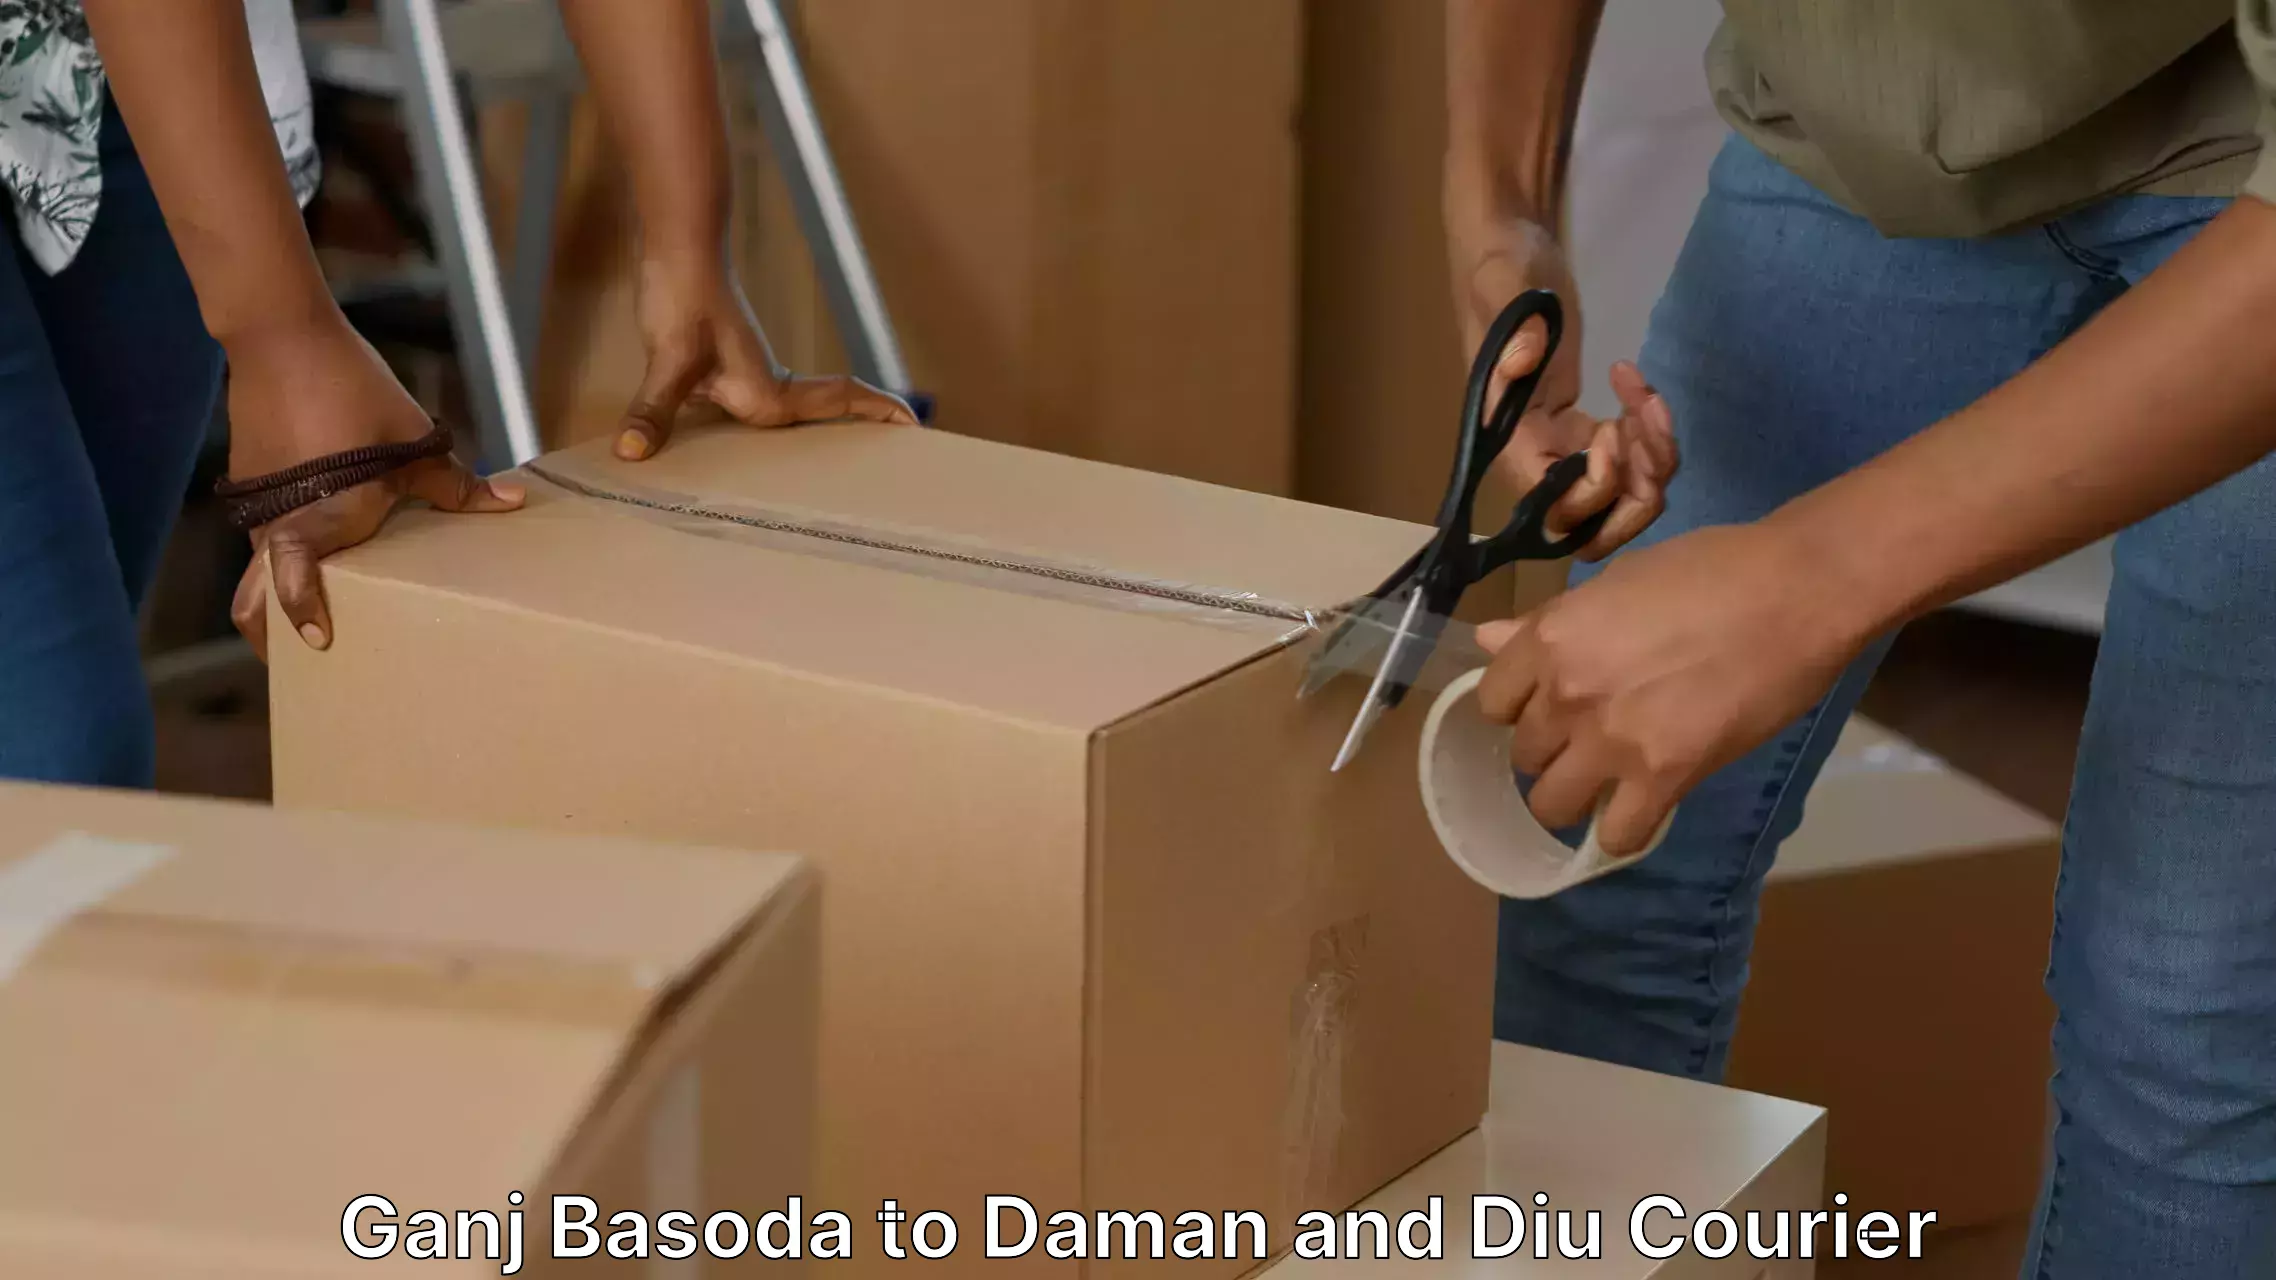 Home moving specialists Ganj Basoda to Diu